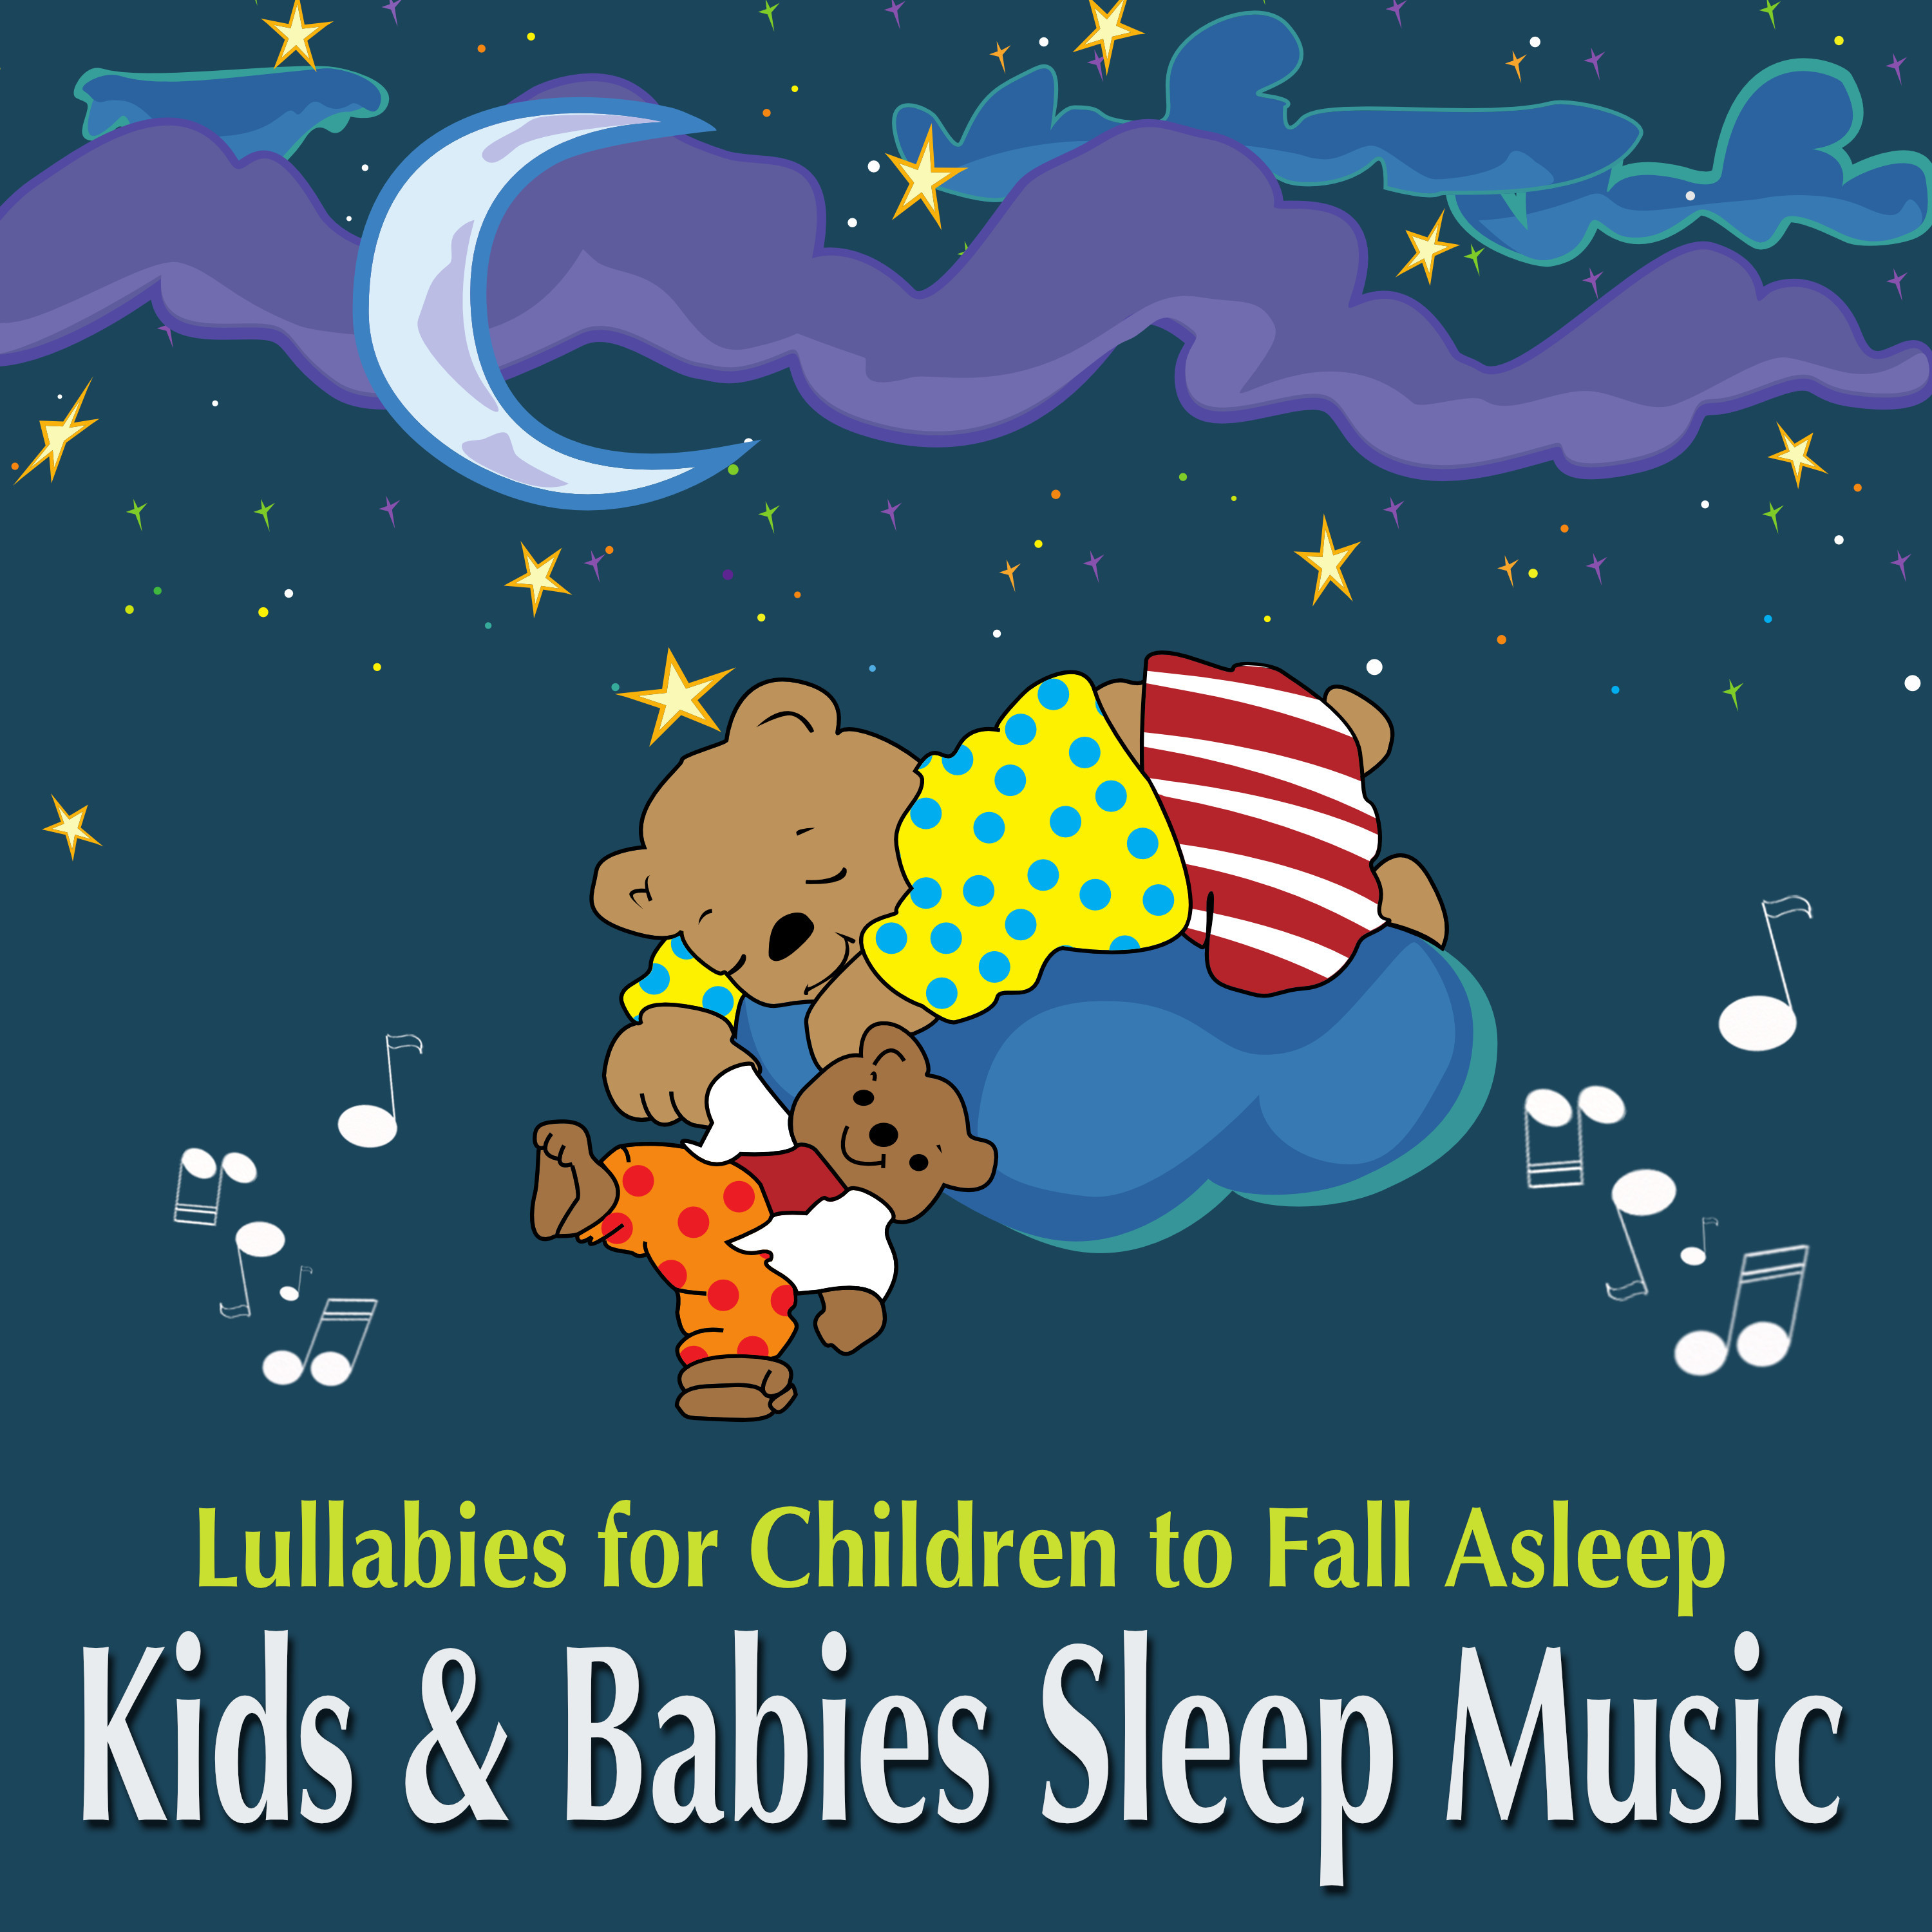 Kids and Babies Sleep Music - Lullabies for Children to Fall Asleep